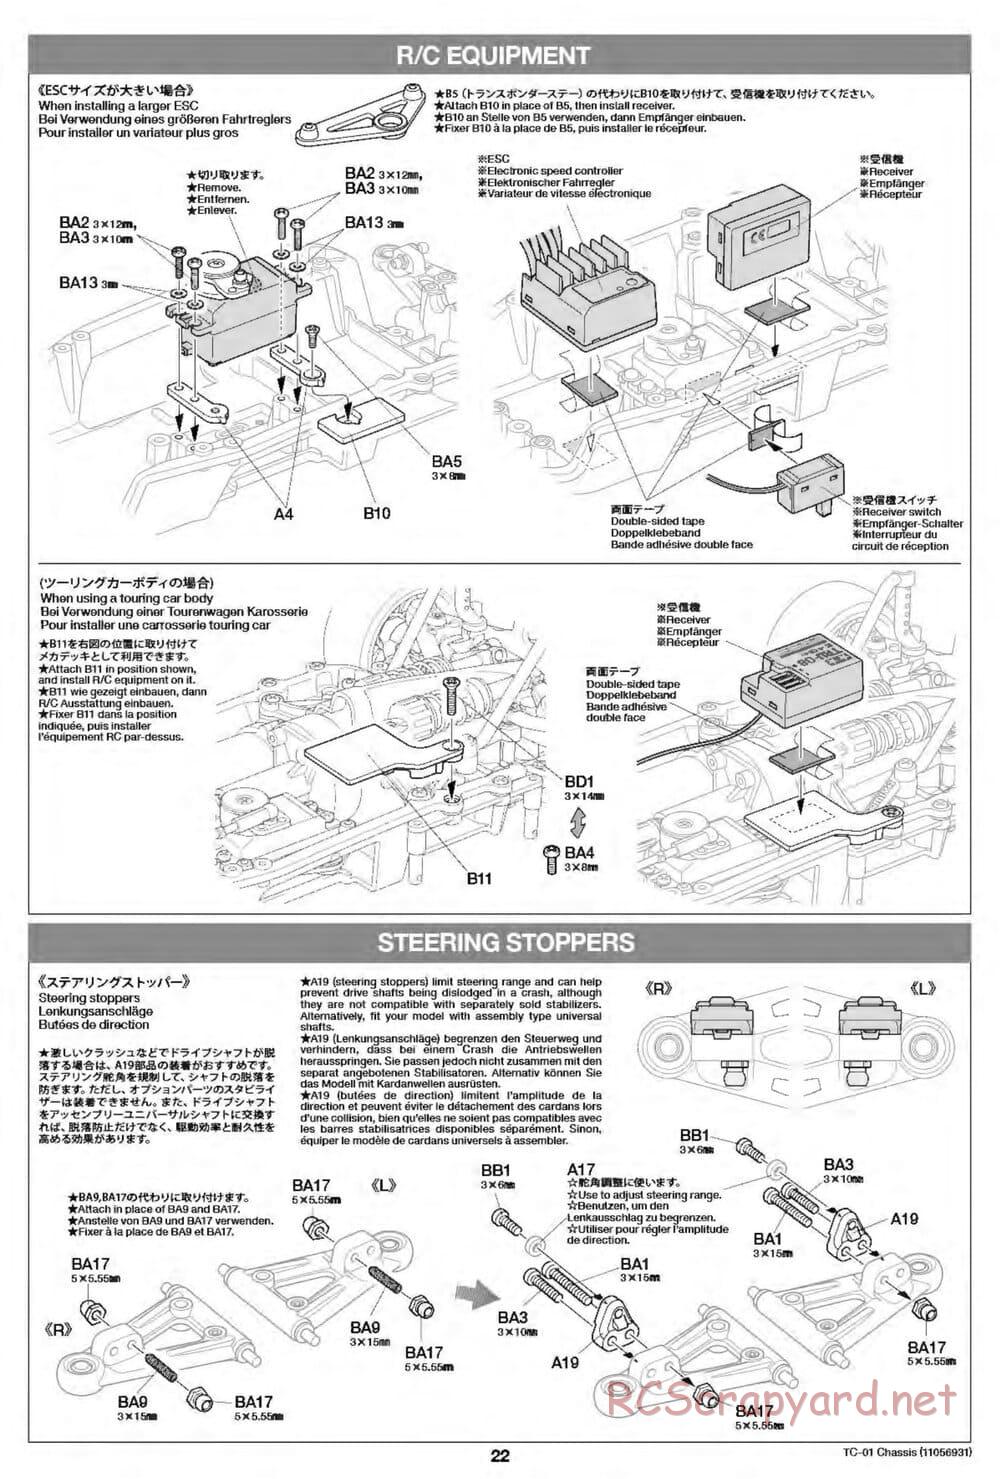 Tamiya - TC-01 Chassis - Manual - Page 22